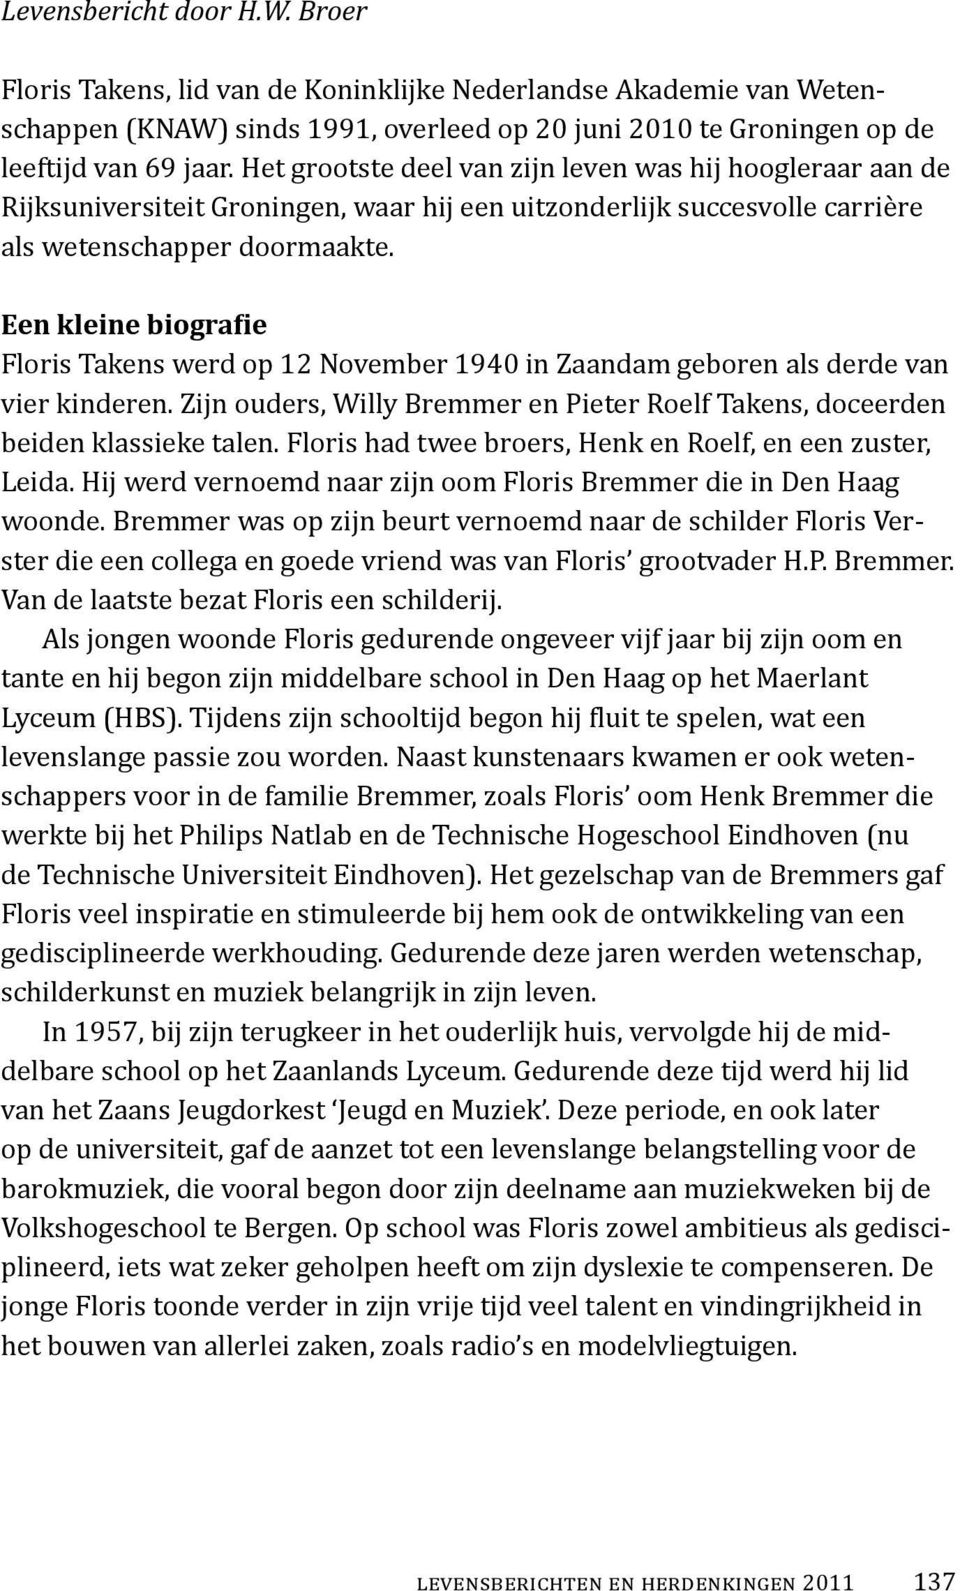 Een kleine biografie Floris Takens werd op 12 November 1940 in Zaandam geboren als derde van vier kinderen. Zijn ouders, Willy Bremmer en Pieter Roelf Takens, doceerden beiden klassieke talen.